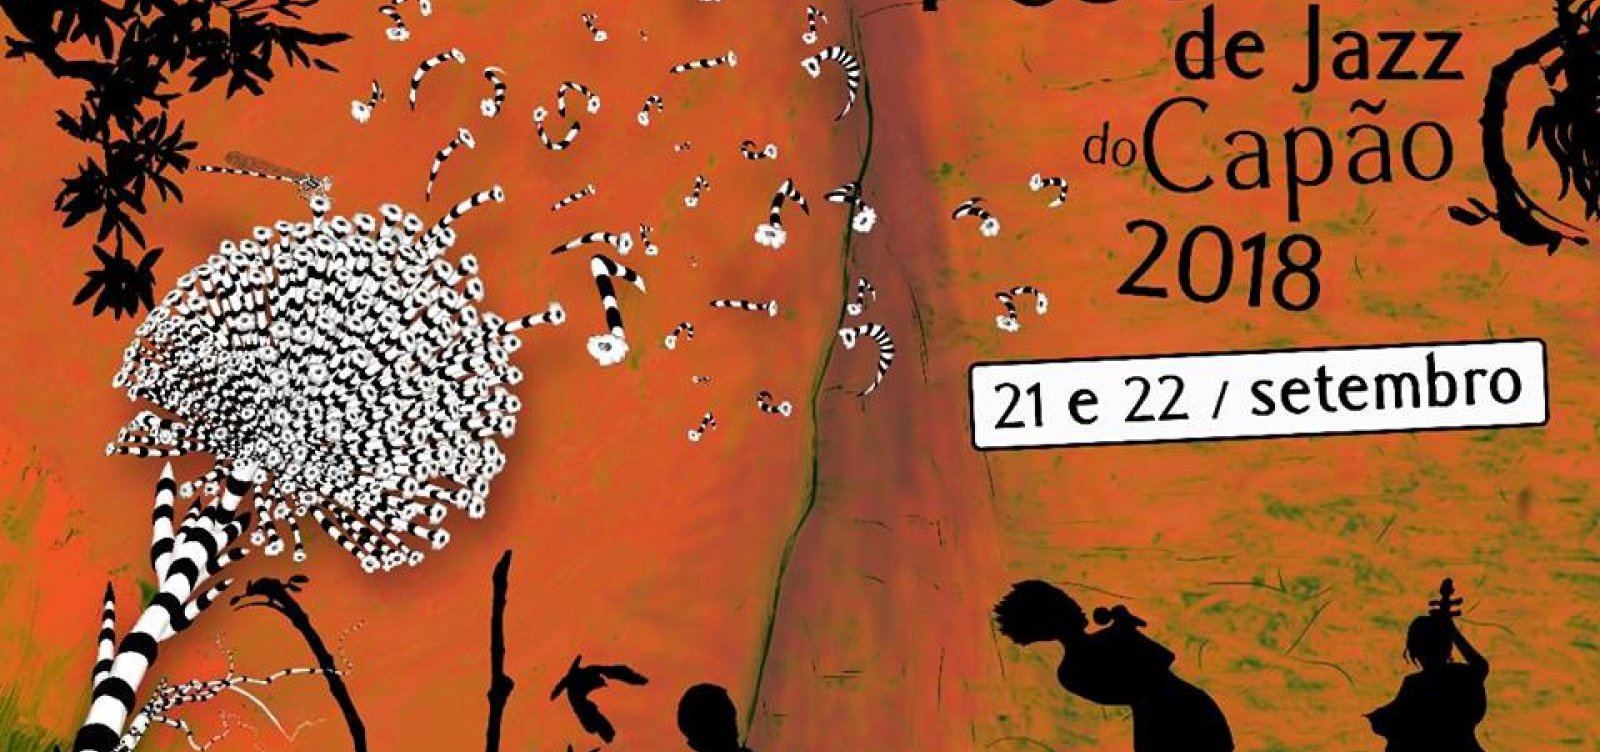 Festival de Jazz do Capão divulga datas da edição 2018; veja